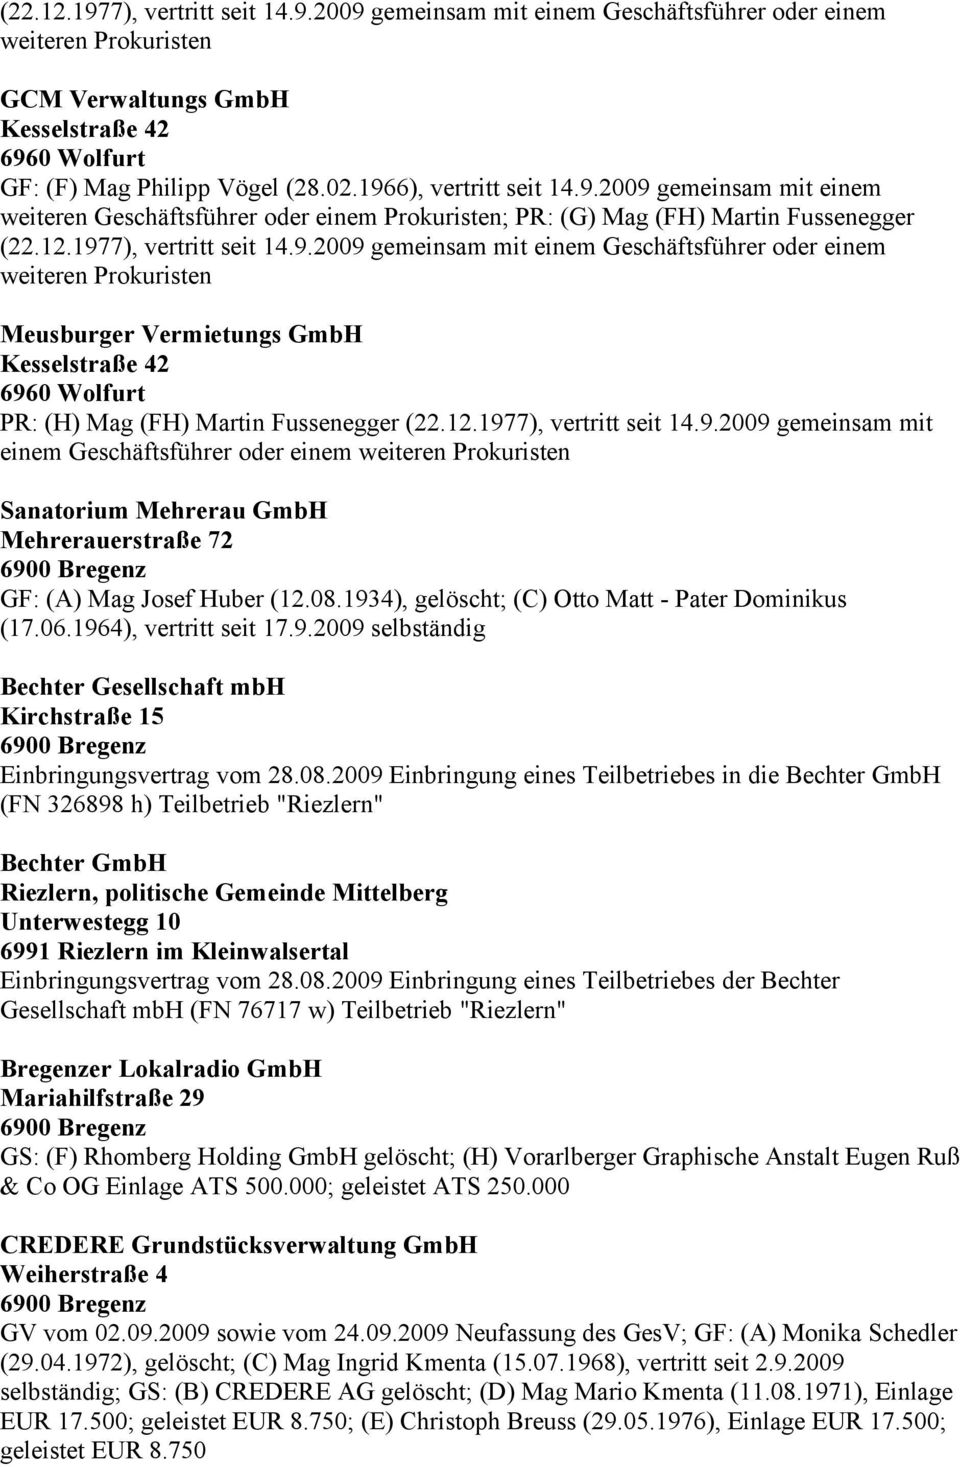 12.1977), vertritt seit 14.9.2009 gemeinsam mit einem Geschäftsführer oder einem weiteren Prokuristen Sanatorium Mehrerau GmbH Mehrerauerstraße 72 GF: (A) Mag Josef Huber (12.08.